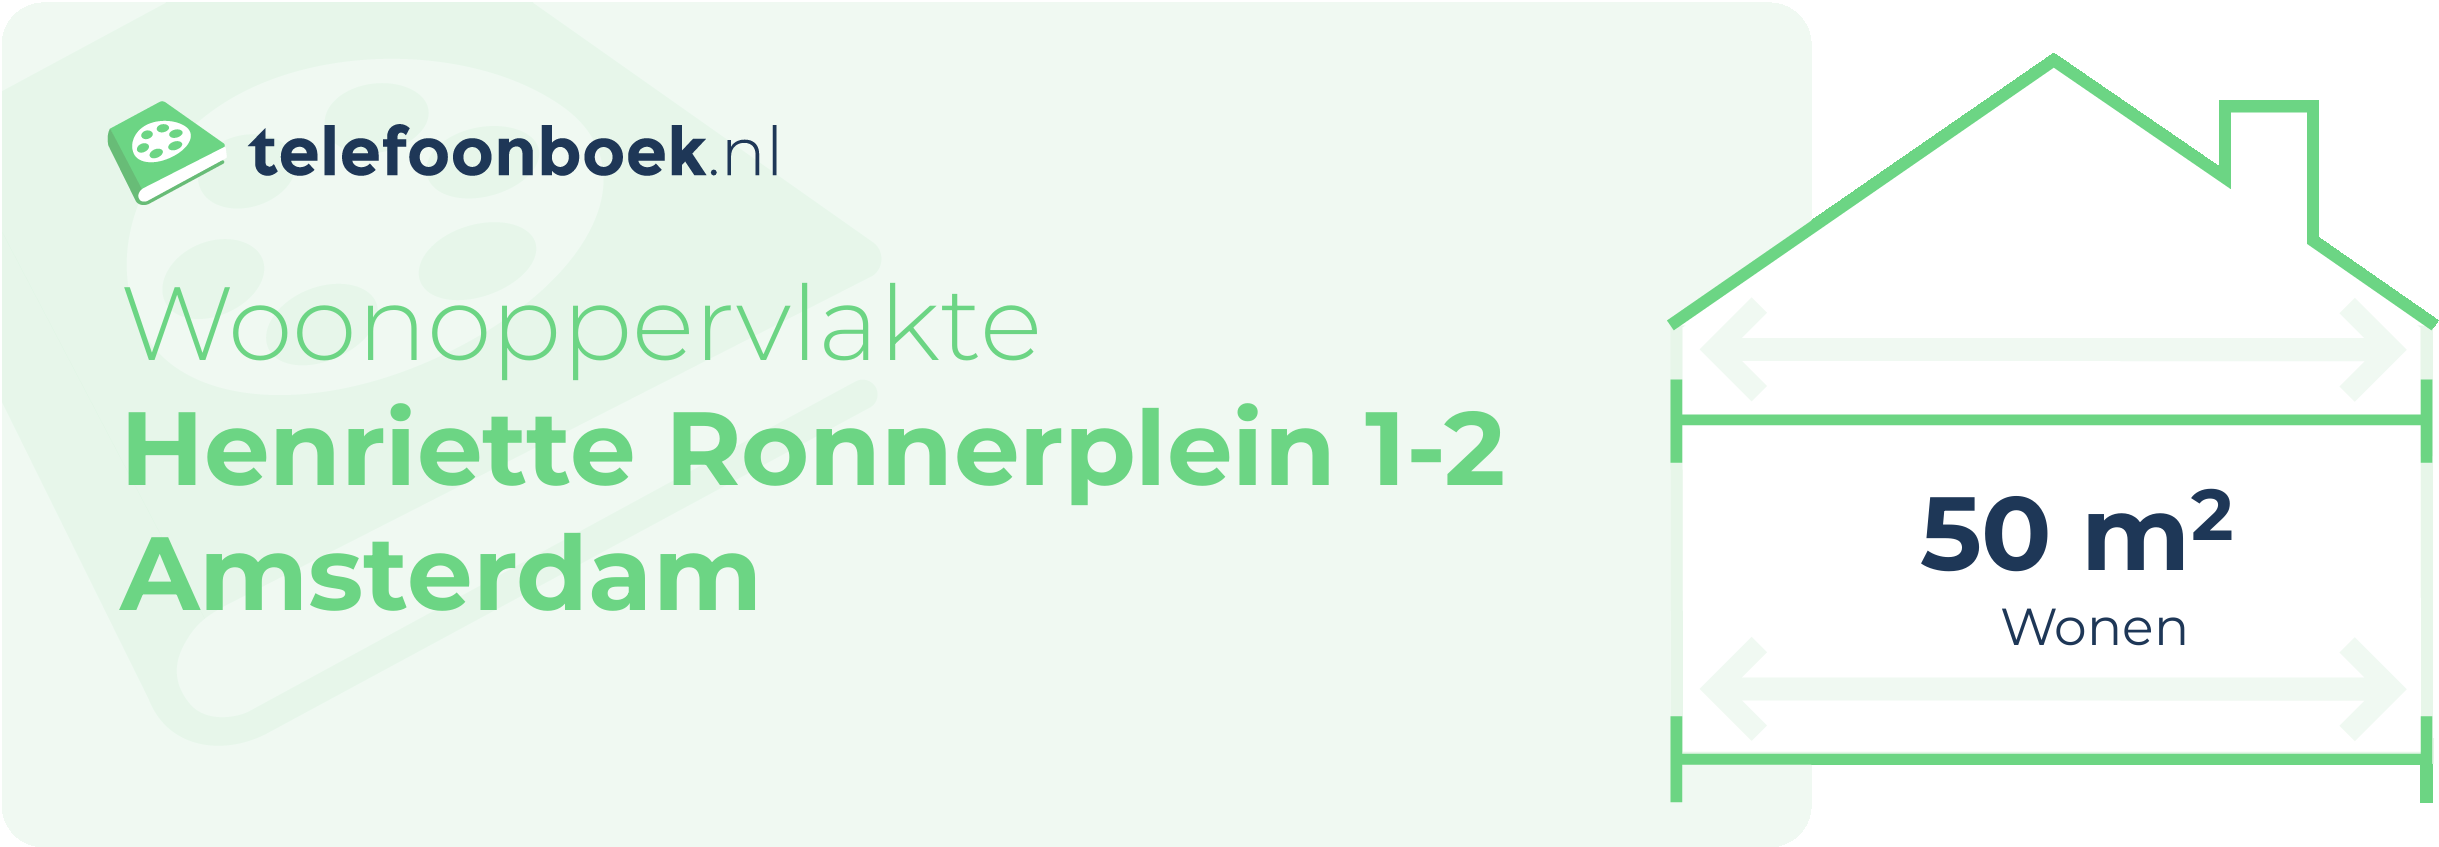 Woonoppervlakte Henriette Ronnerplein 1-2 Amsterdam